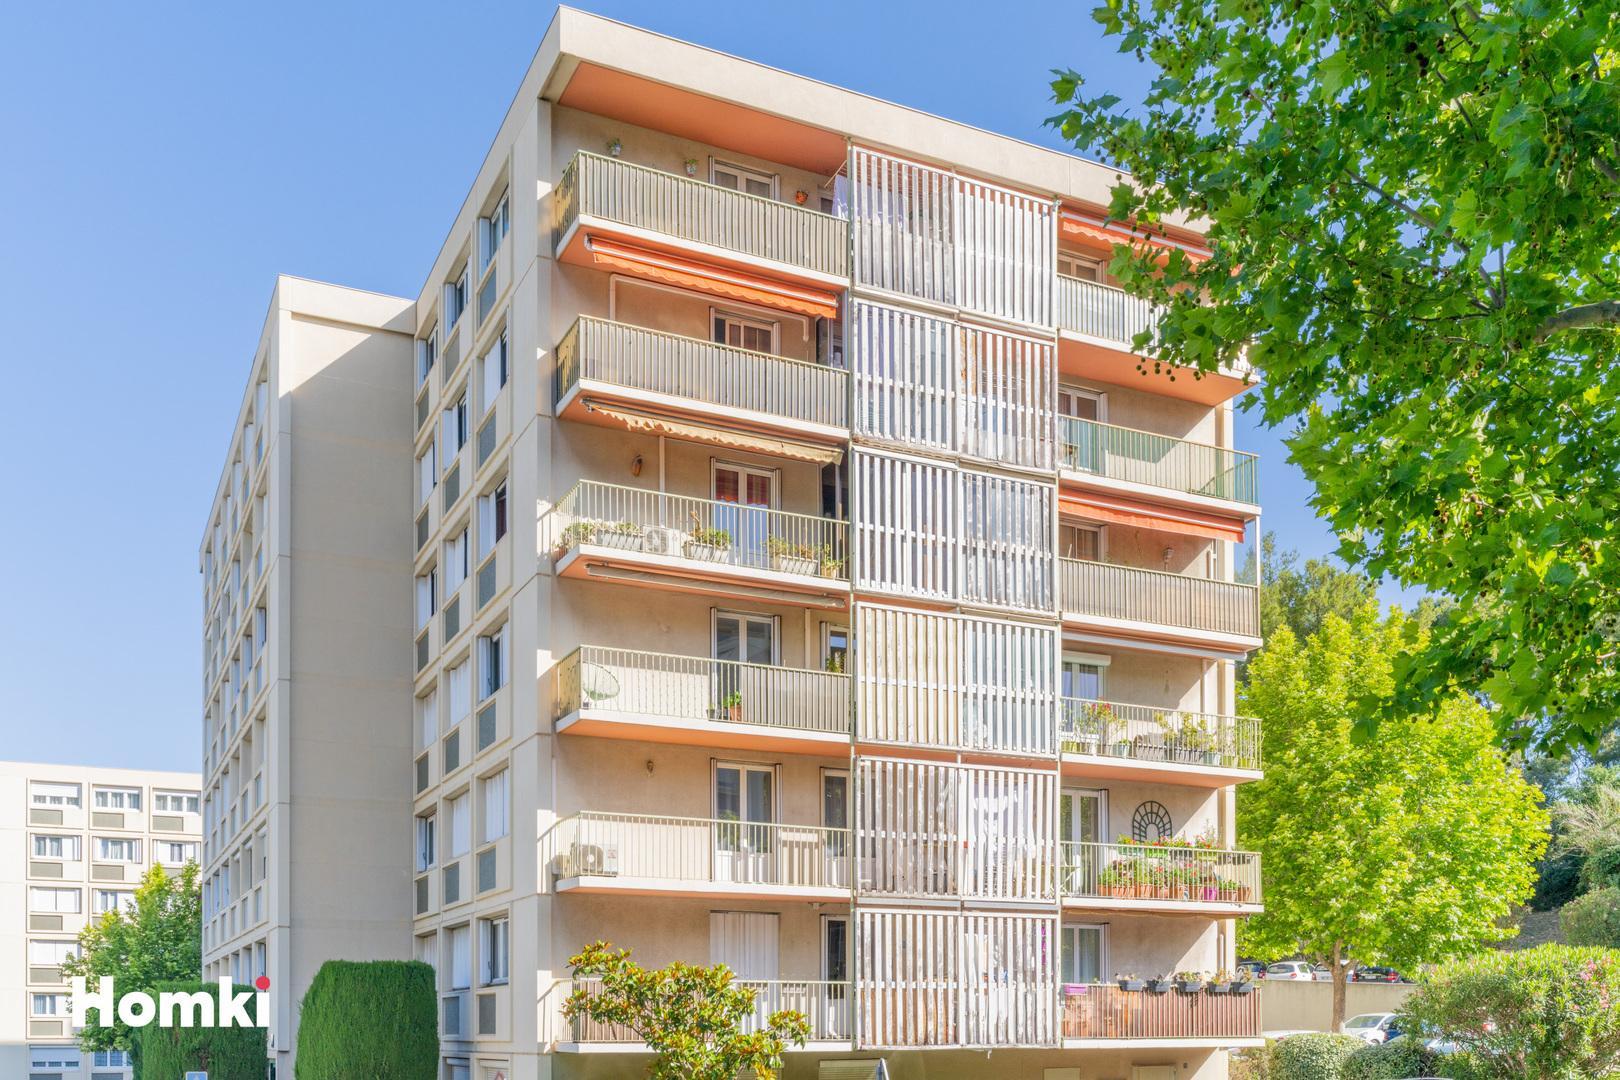 Homki - Vente Appartement  de 92.0 m² à Marseille 13010